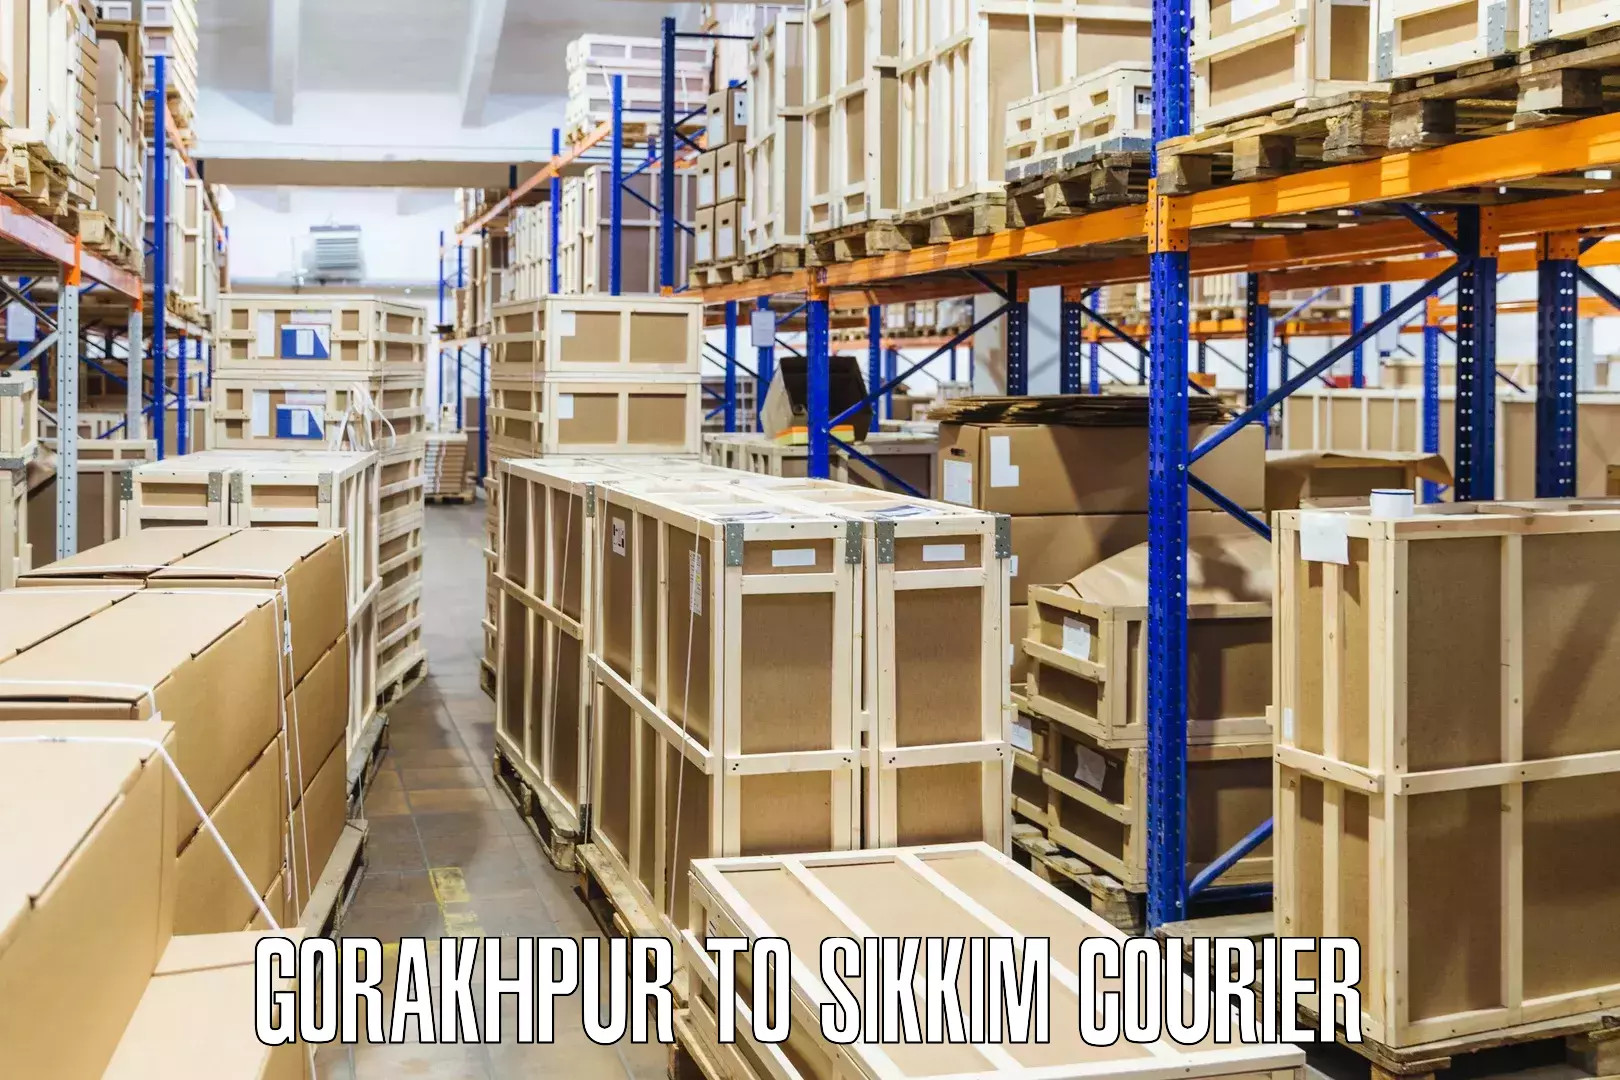 Bulk shipment Gorakhpur to North Sikkim